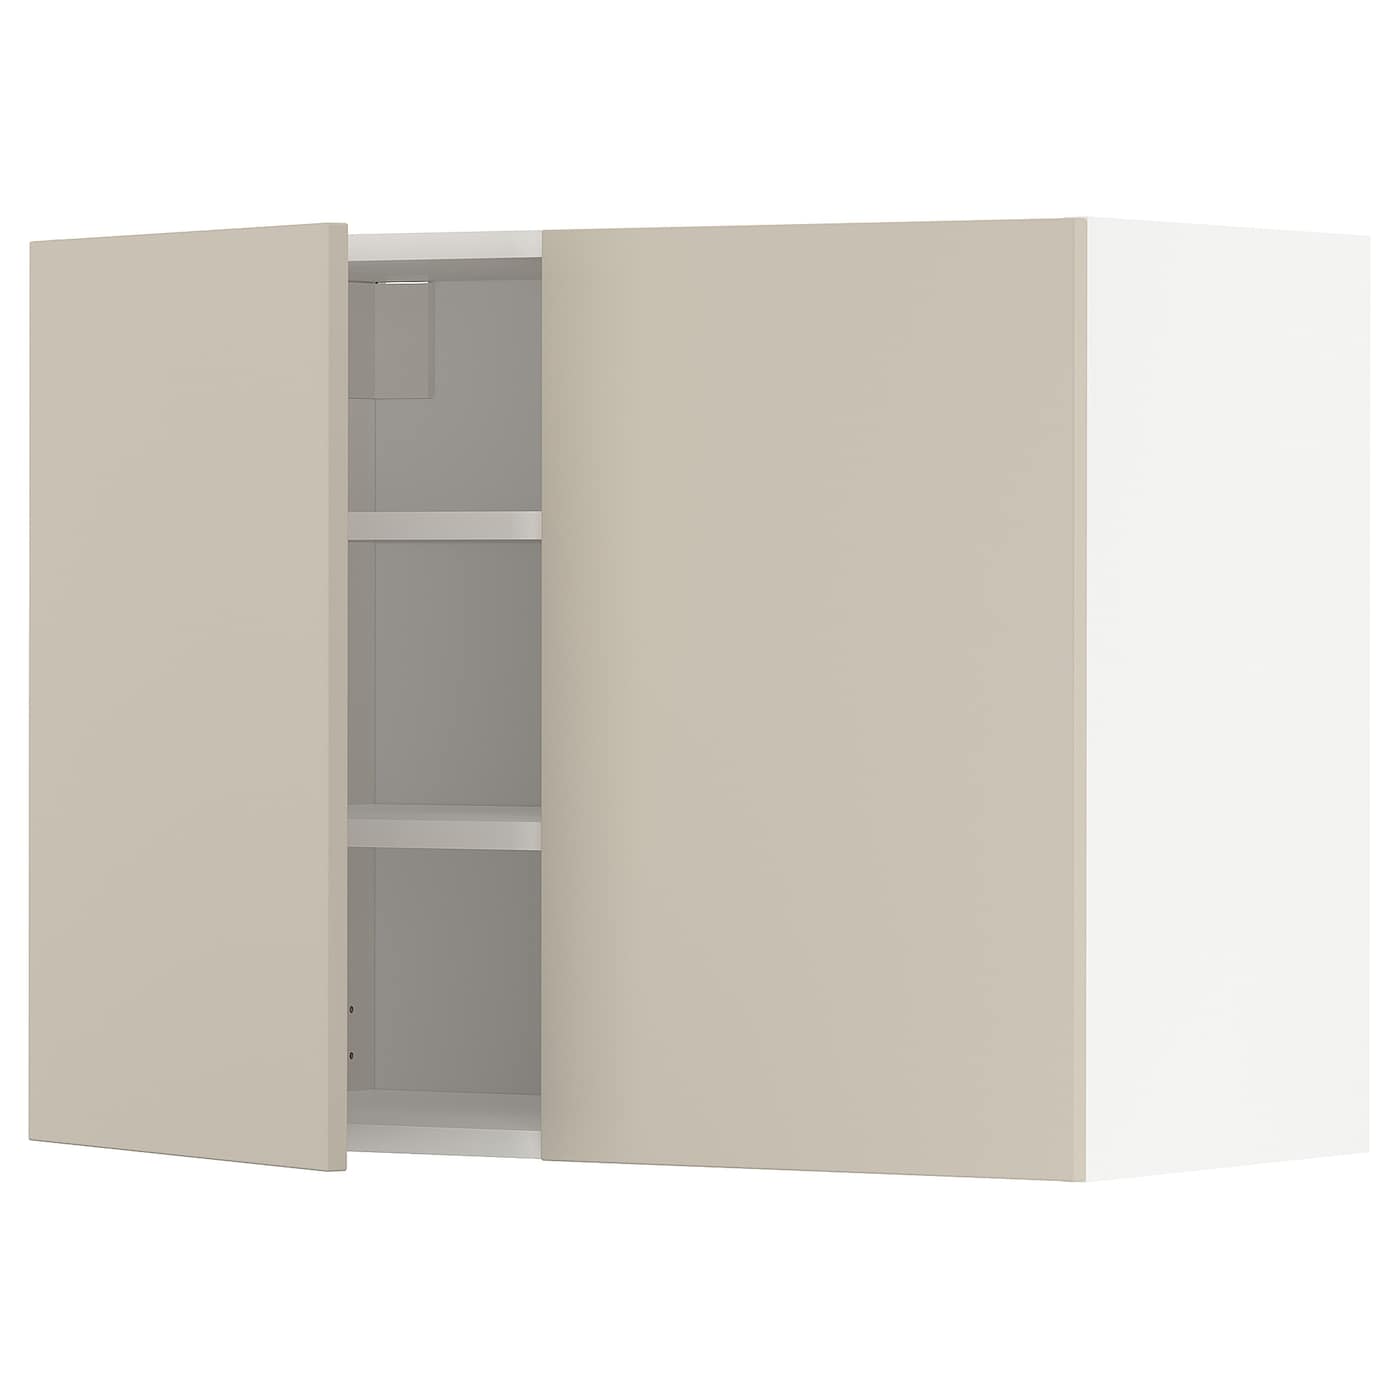 Навесной шкаф с полкой - METOD IKEA/ МЕТОД ИКЕА, 80х60 см, светло-коричневый/белый